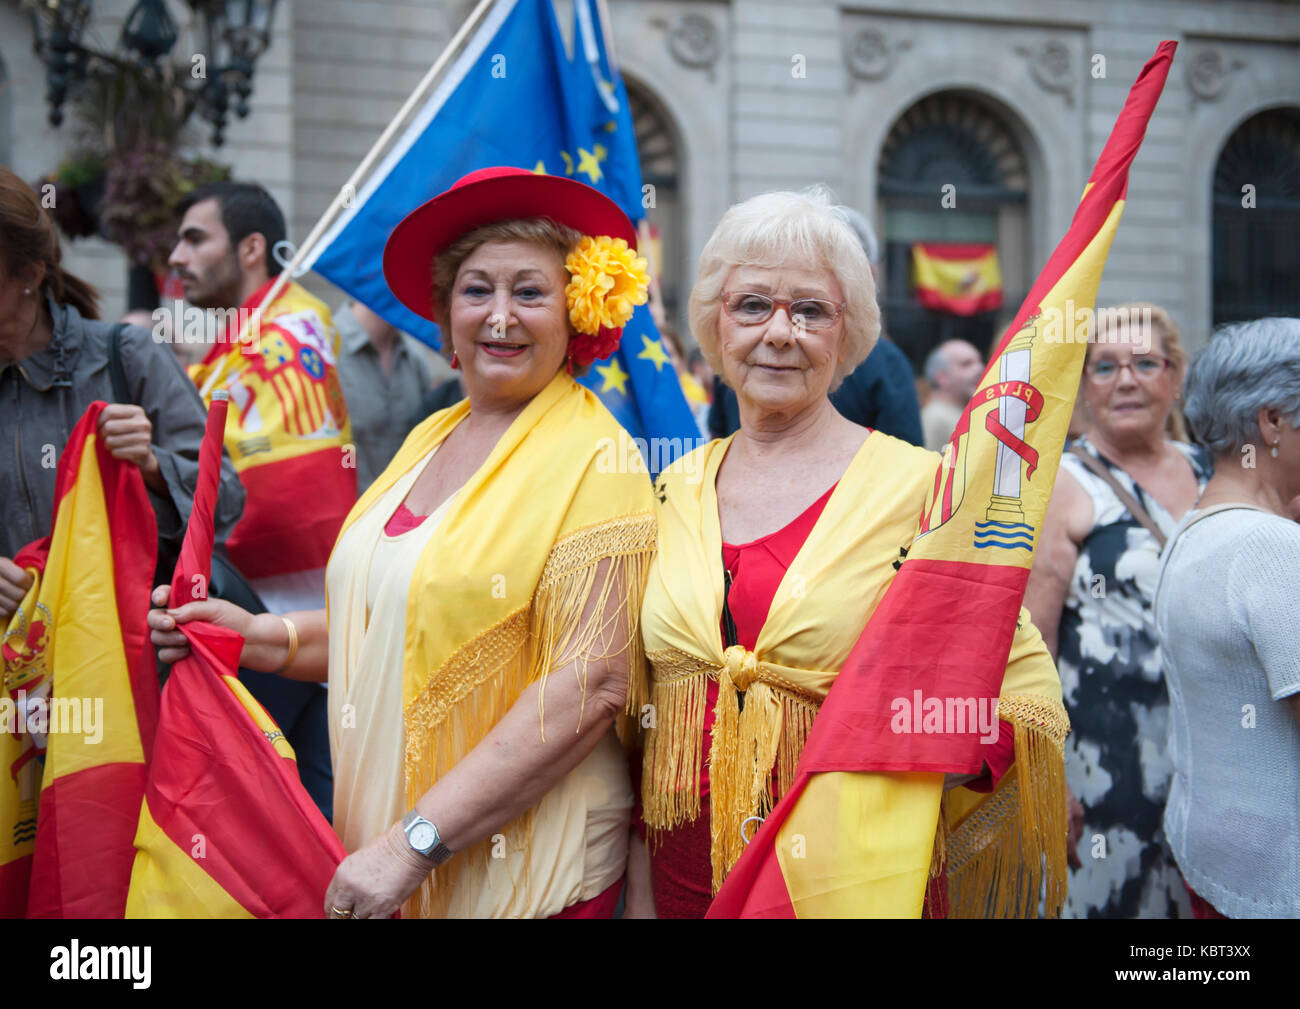 Due Referendum anti sostenitori in posa per la stampa. Anti referendum manifestanti hanno percorso le strade di Barcellona per esprimere la loro rabbia oltre il referendum di indipendenza della Catalogna che si svolgerà il 1 ottobre. Foto Stock